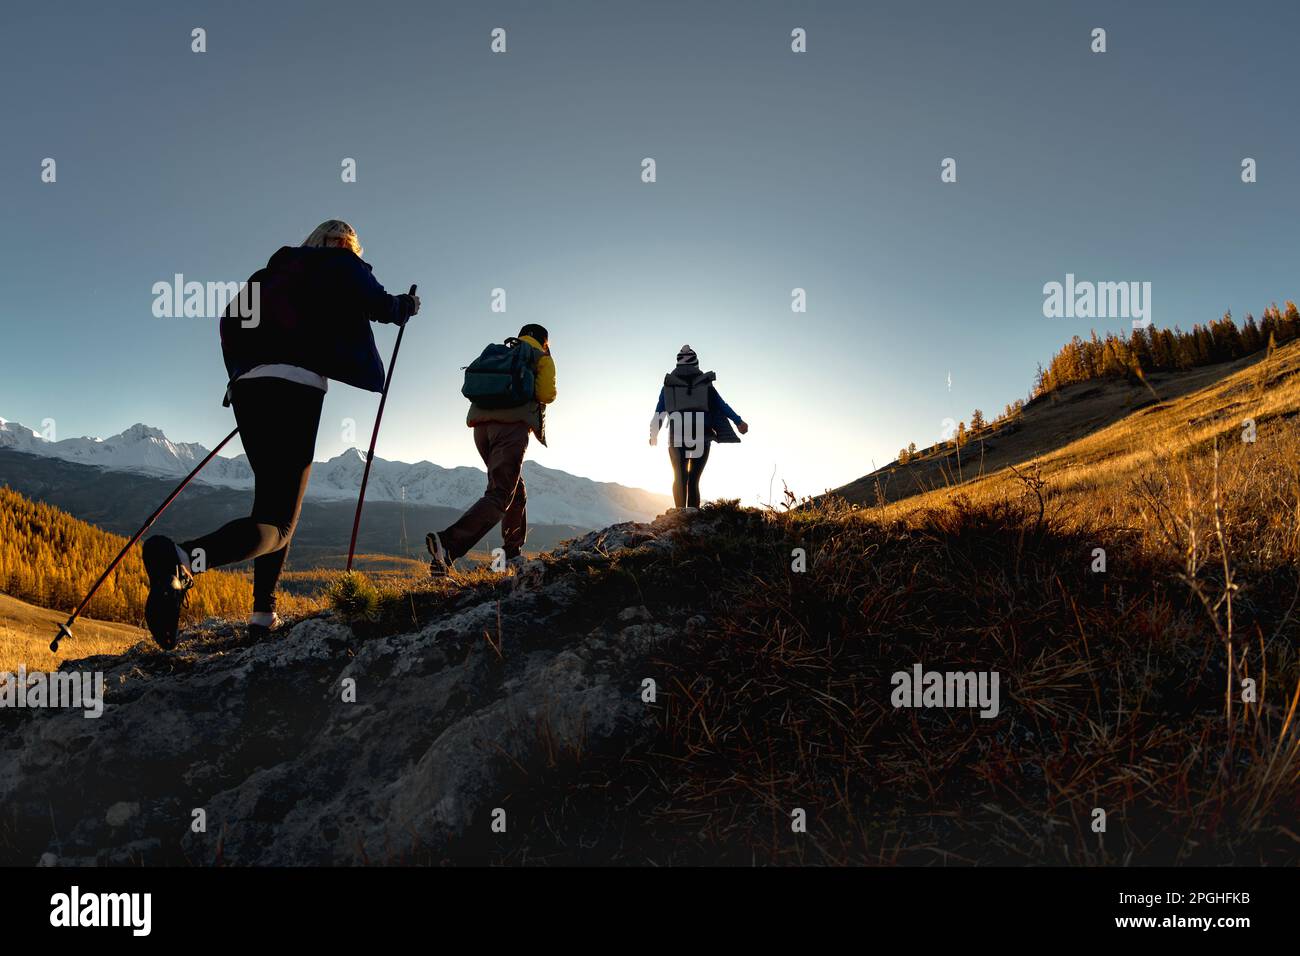 Trois randonneurs actifs marchent dans les montagnes. Silhouettes de touristes avec sacs à dos au coucher du soleil Banque D'Images